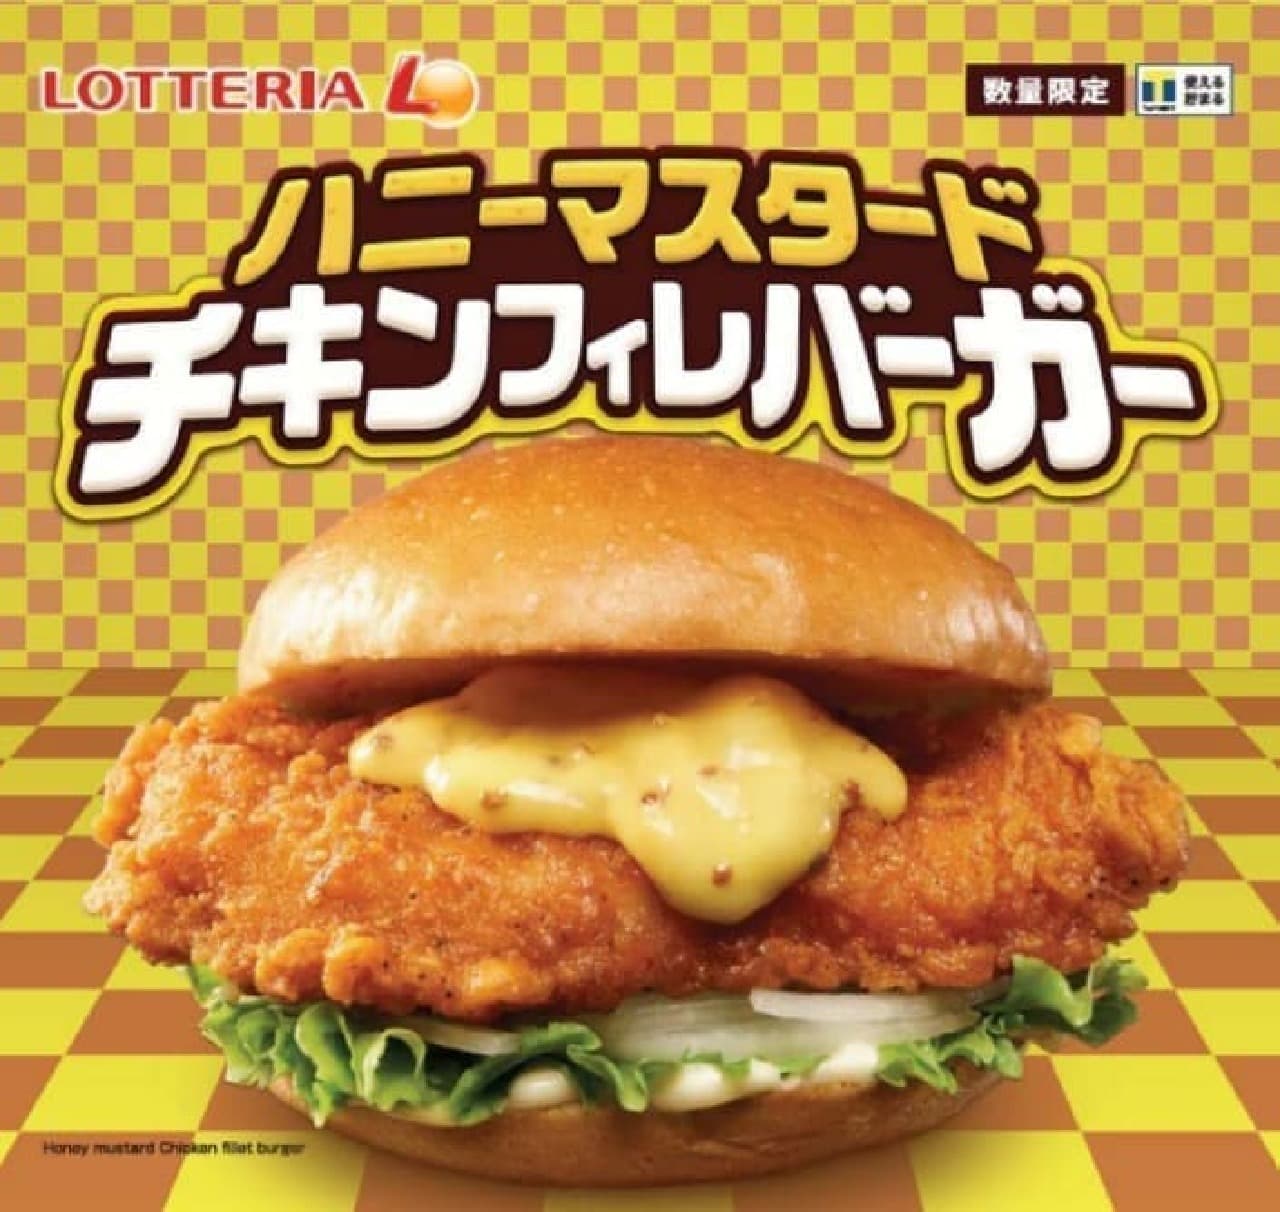 "Honey Mustard Chicken Fillet Burger" in Lotteria